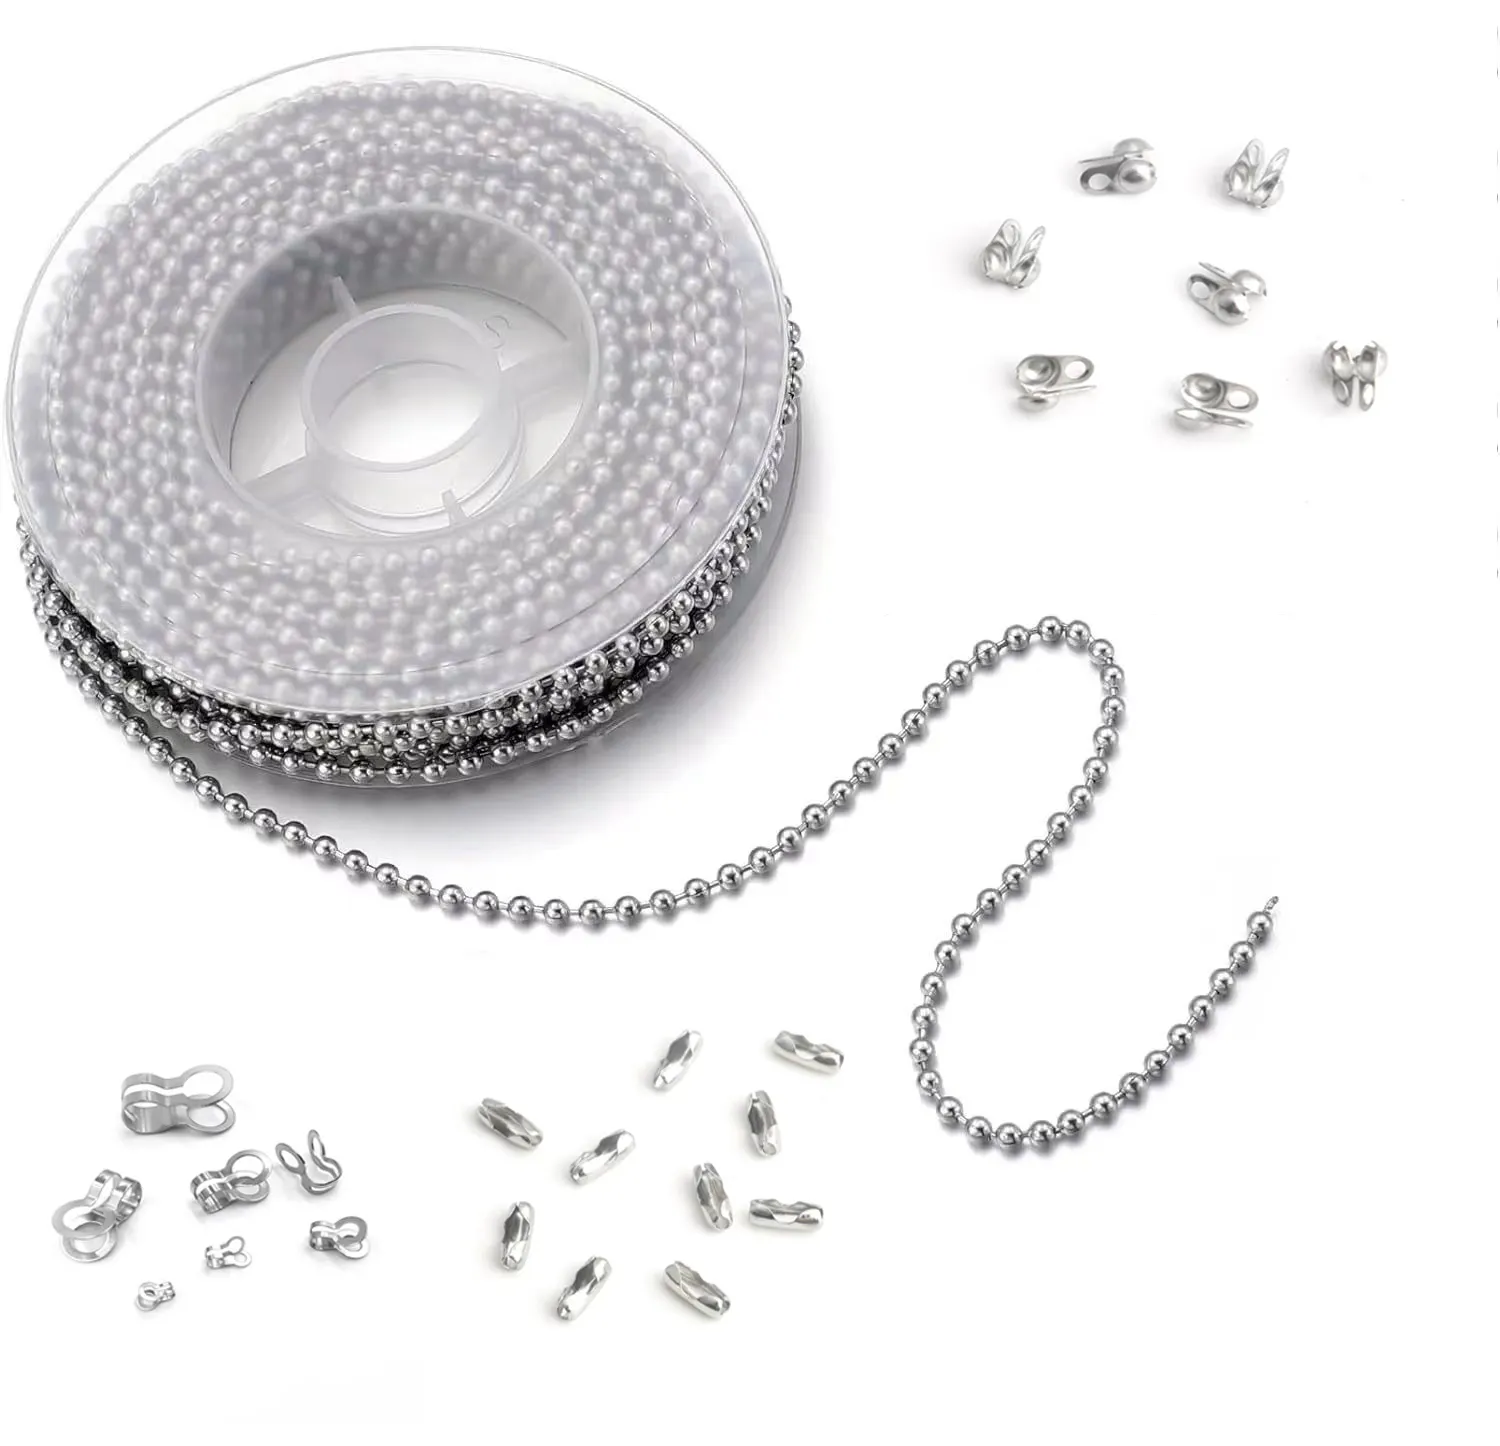 1mm- 8mm in acciaio inossidabile catena di perline in metallo ottone ferro catena regolabile tappo fai da te portachiavi chiusura creazione di gioielli